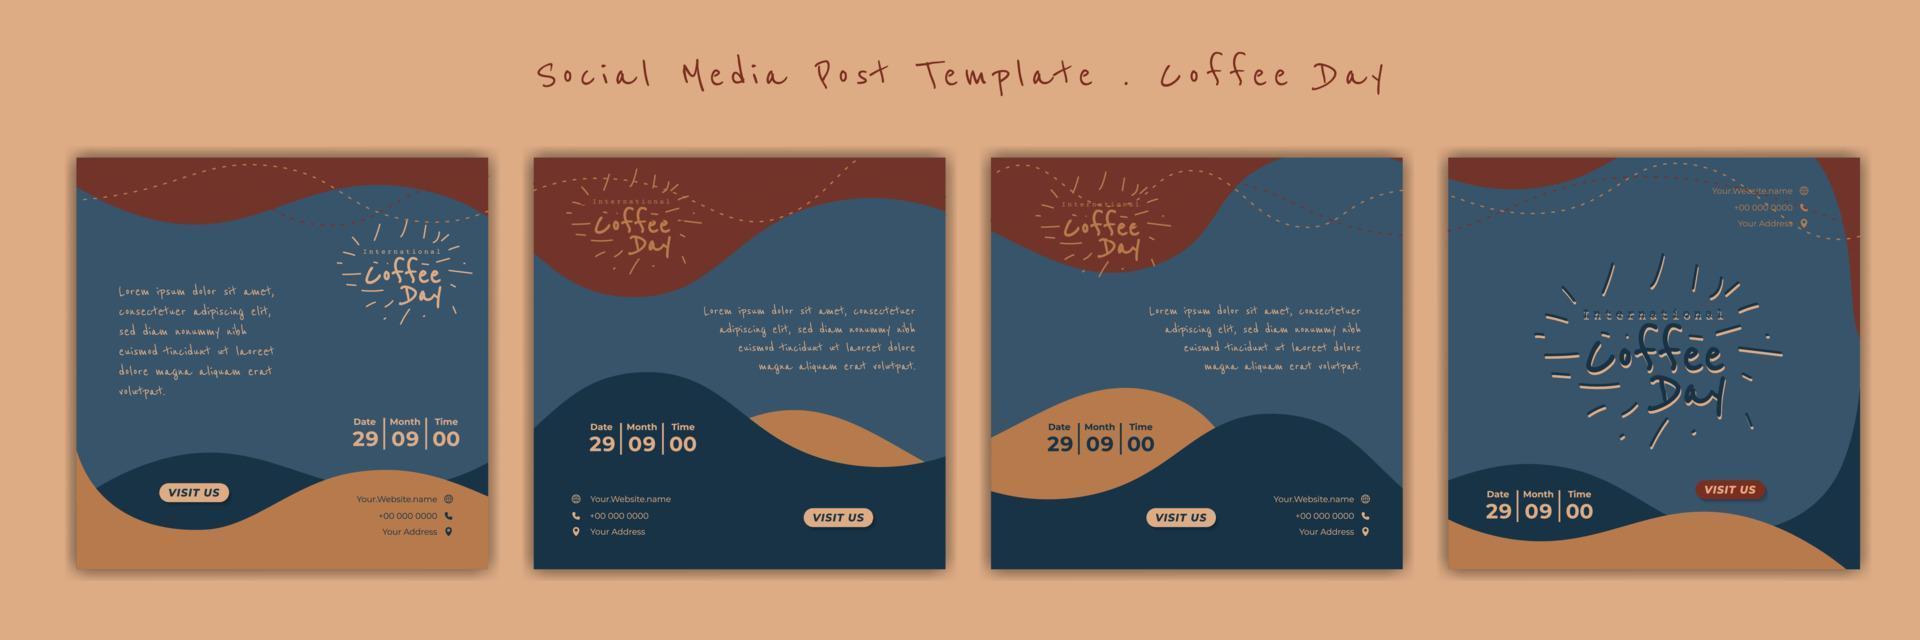 conjunto de modelo de postagem de mídia social com design de letras de café. ilustração em vetor dia internacional do café.